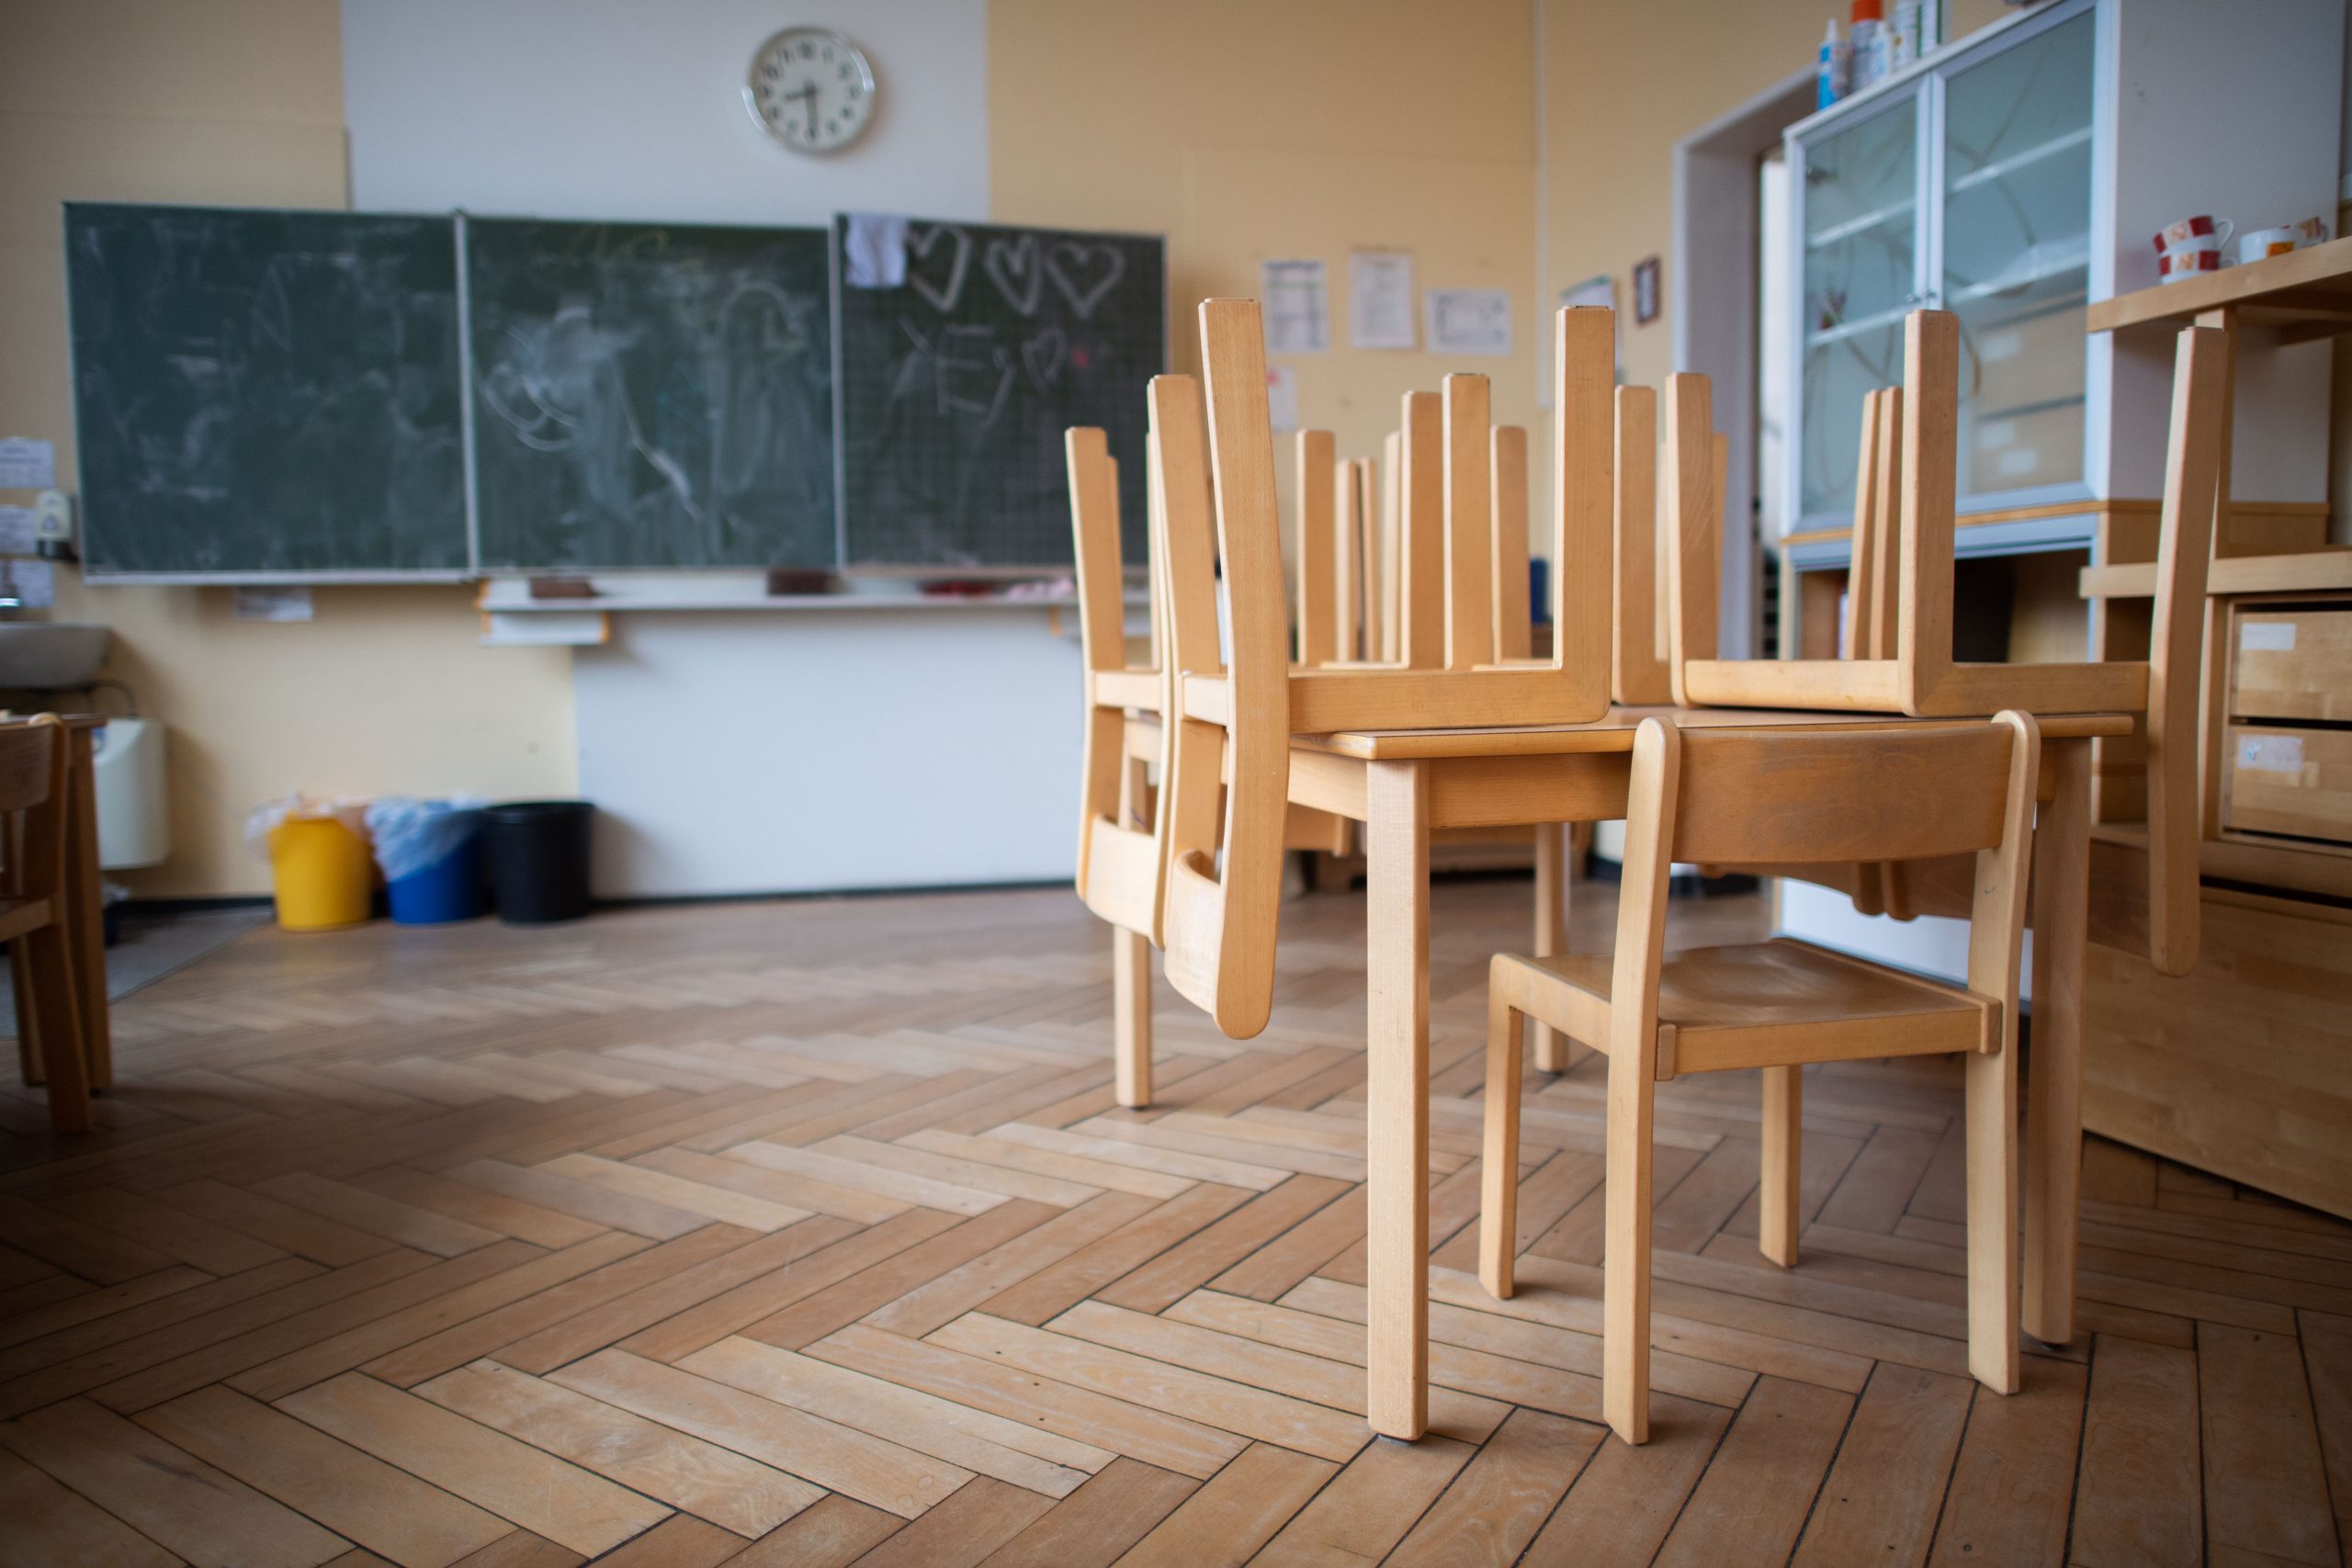 Stühle sind auf Tischen gestapelt in einem Klassenraum.